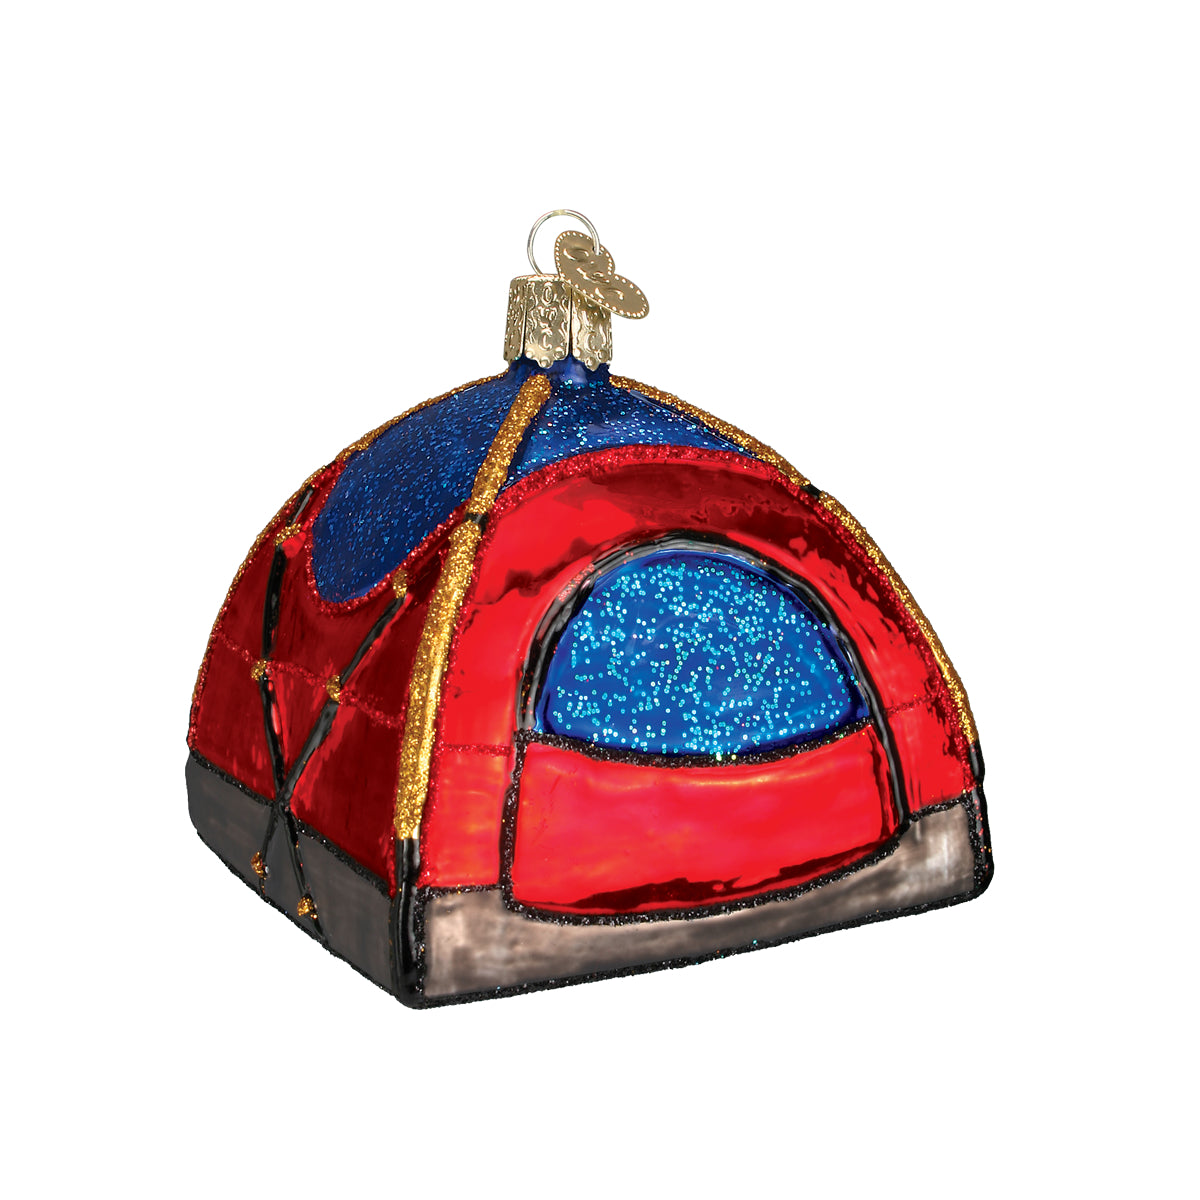 Dome Tent Ornament